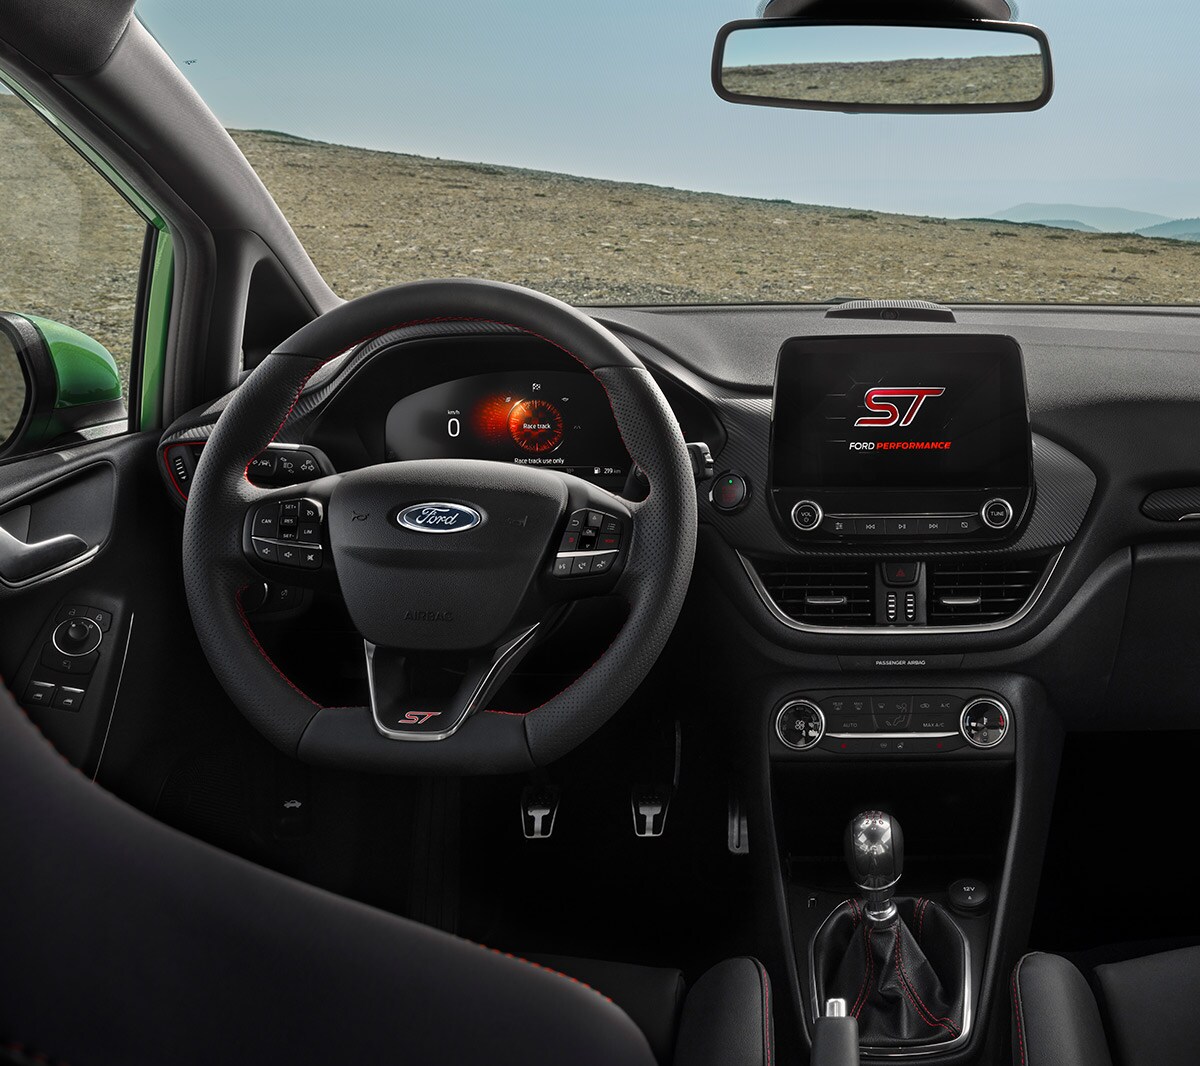 Ford Fiesta ST Innenraum. Detailansicht Cockpit mit Lenkrad, Touchscreen und digitaler Instrumententafel.